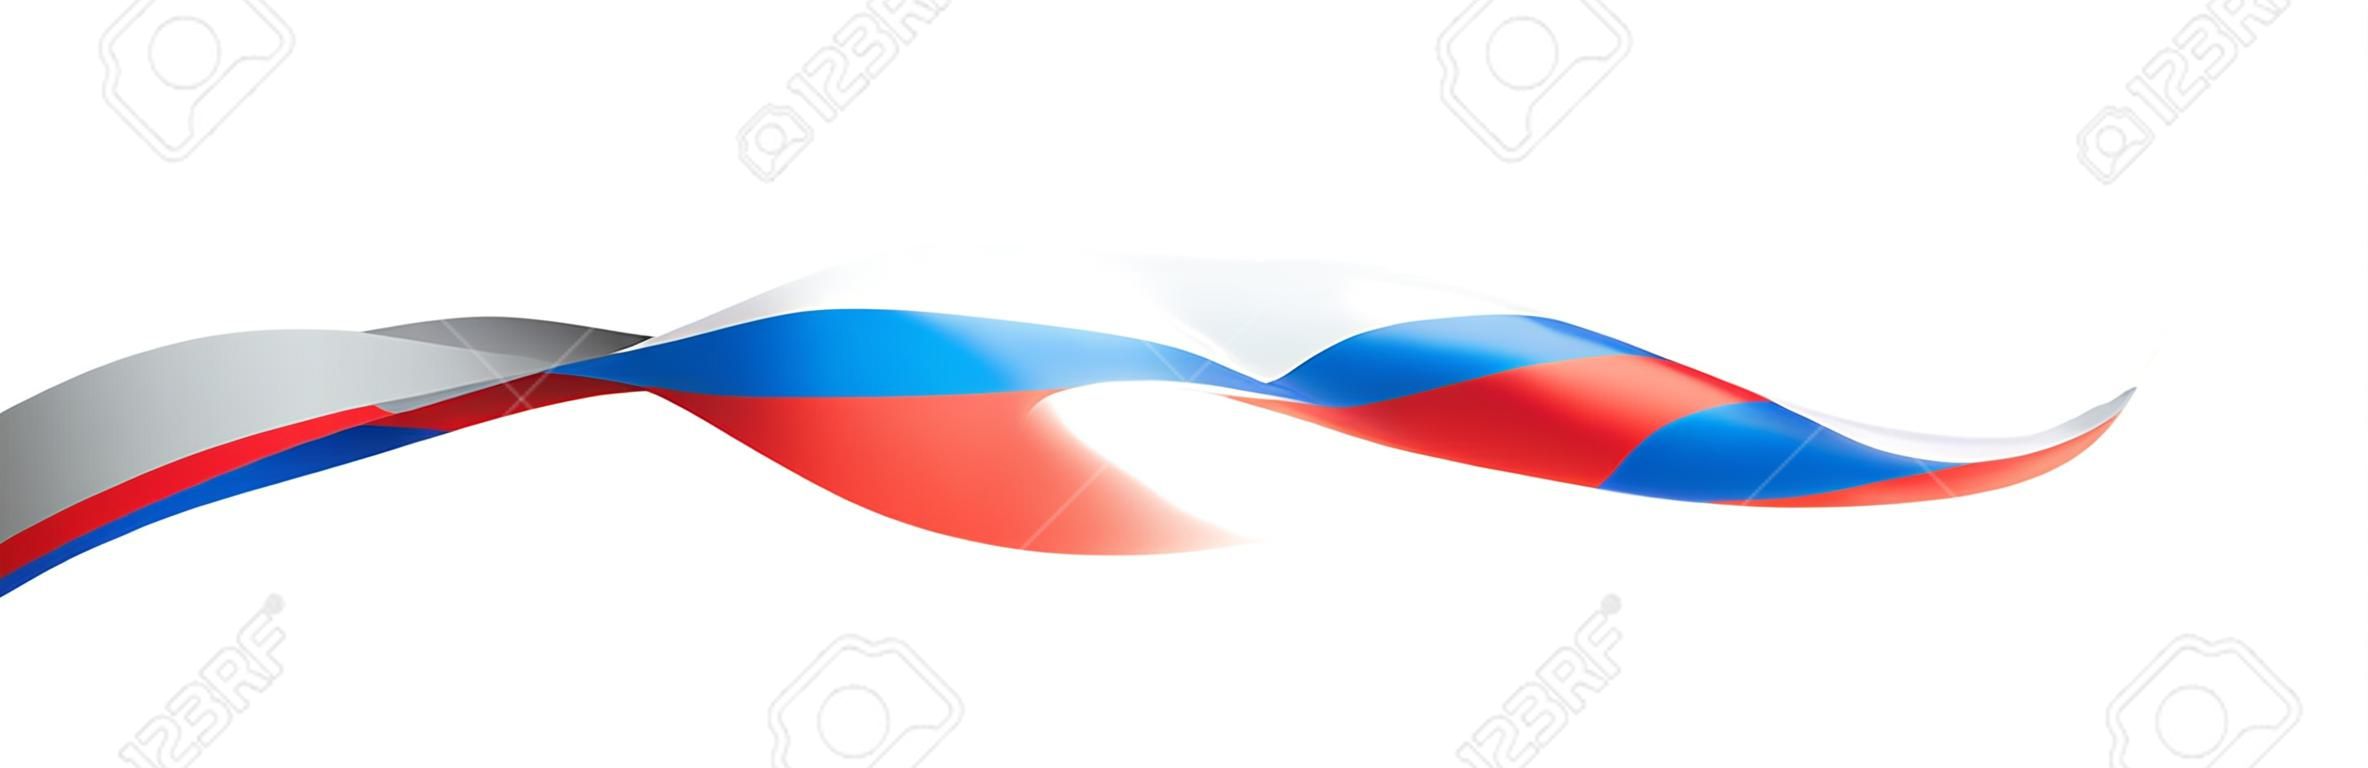 Bandiera della Russia, illustrazione vettoriale su sfondo bianco.